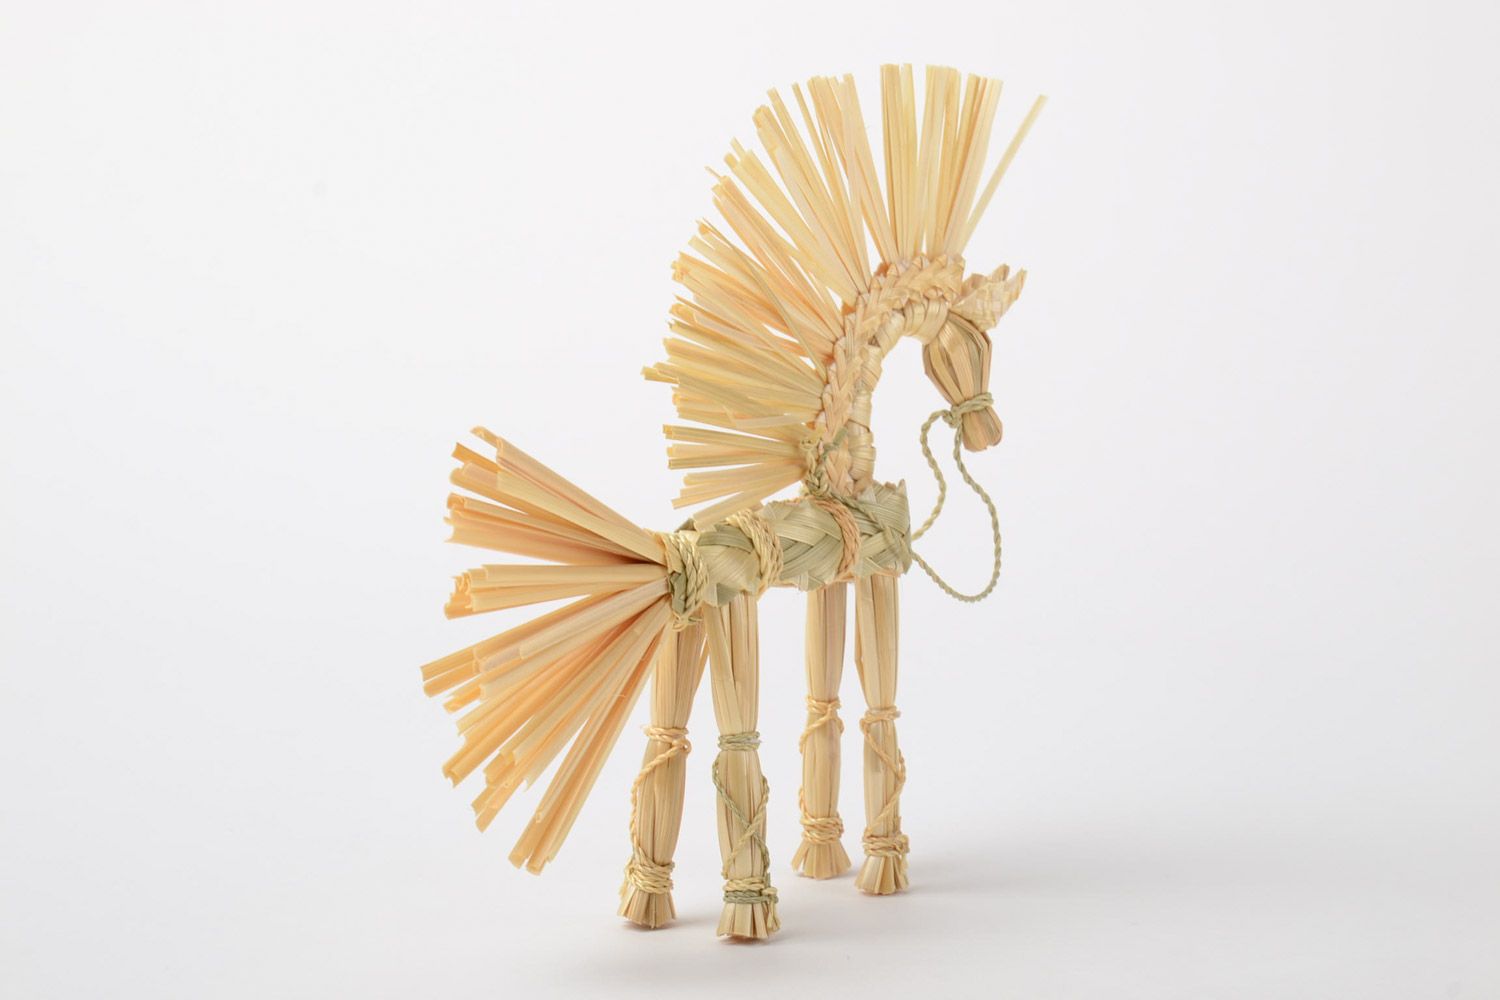 Handmade Spielzeug aus Stroh in Form von geflochtenem Pferd slawisch klein schön foto 3